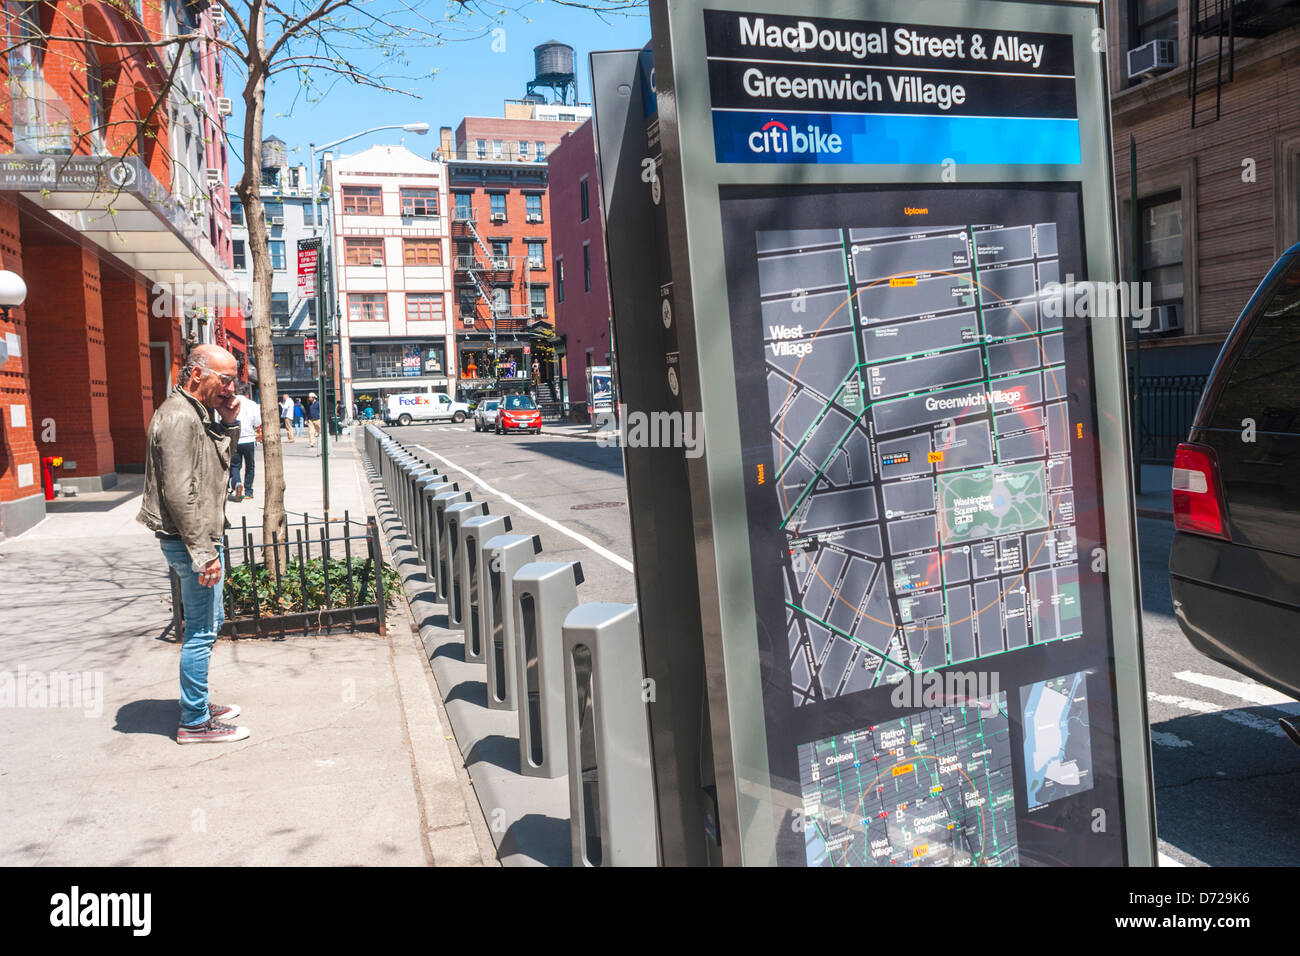 New York, NY - nouvellement installé sur la station de BikeShare MacDougal Street à Greenwich Village Banque D'Images